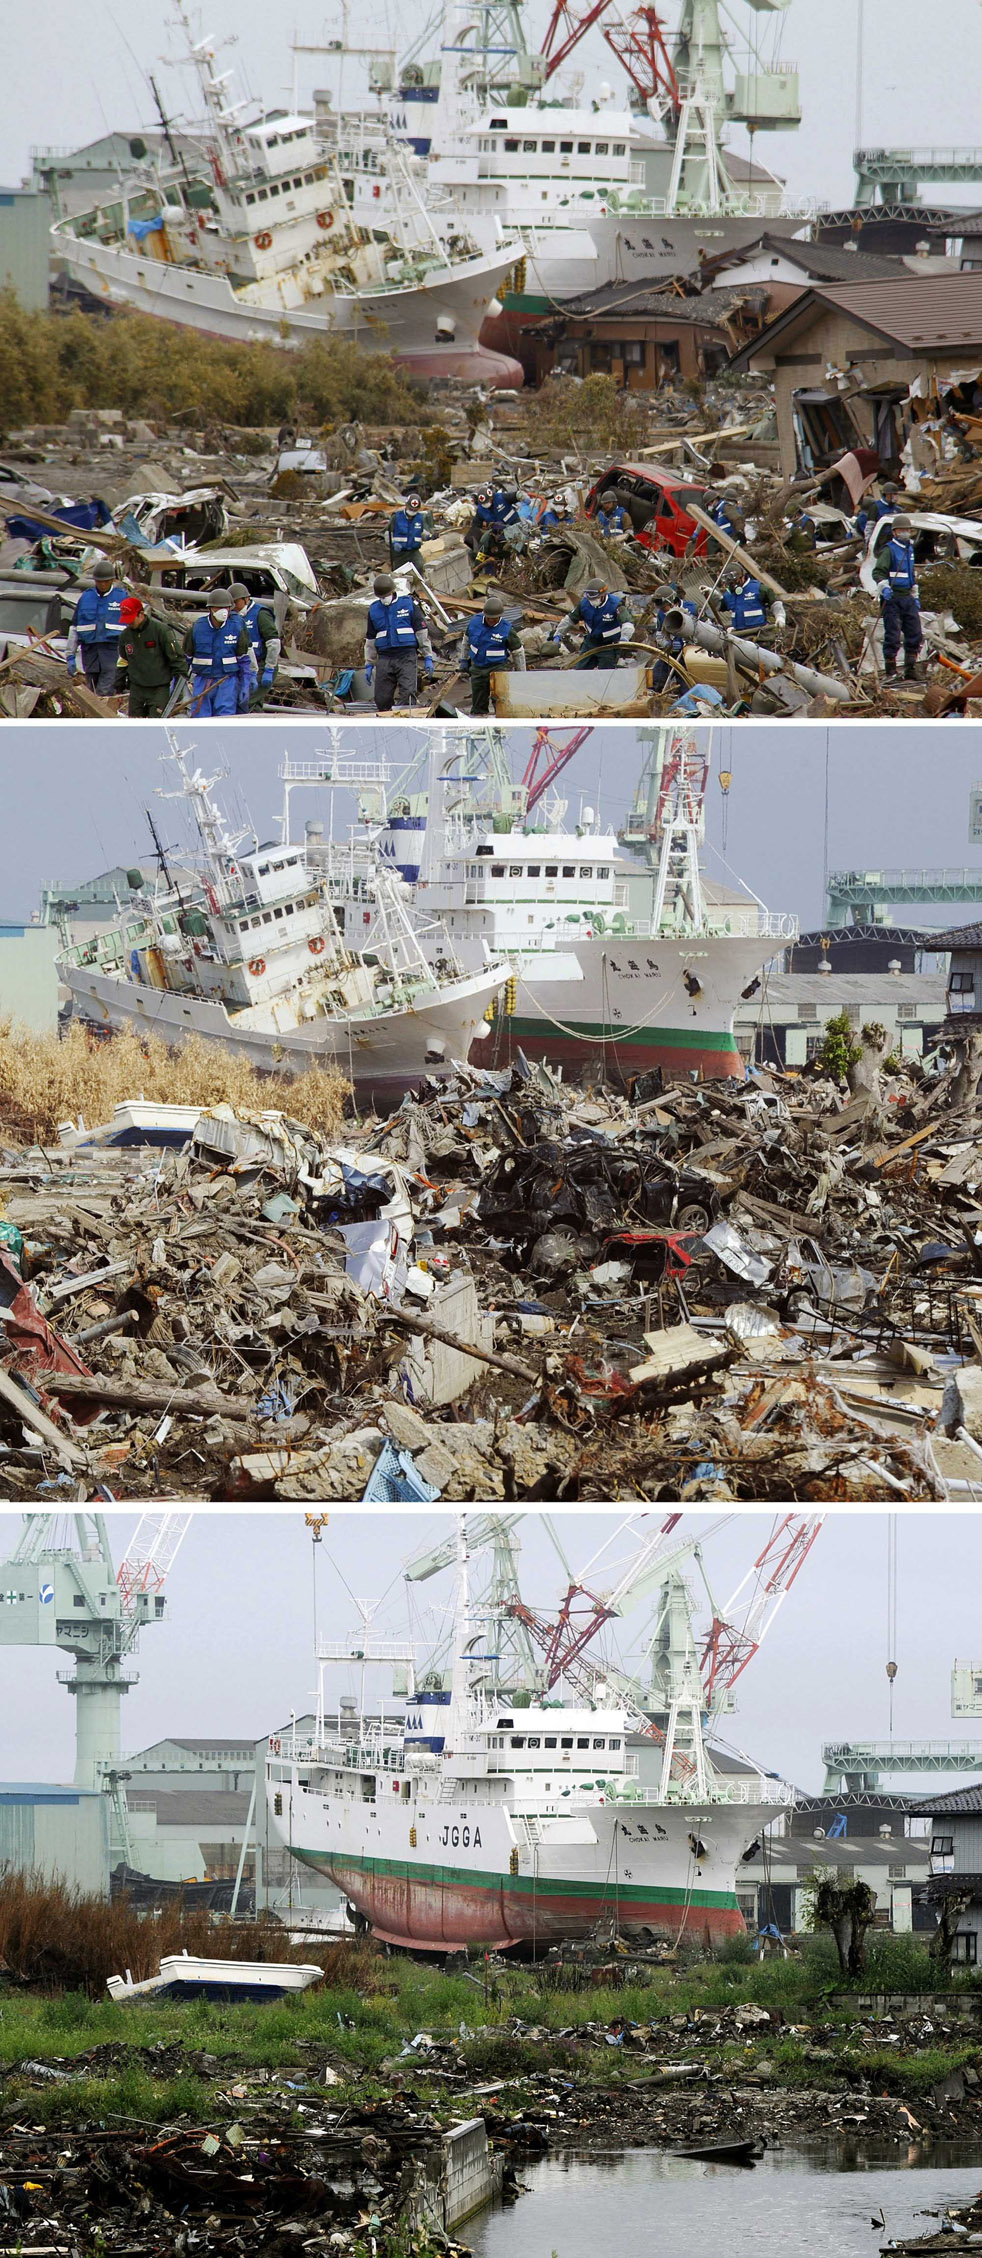 Higashimatsushima, префектура Мияги, 14 марта, 3 июня, 1 сентября. Одно из судов, севших на мель, еще не убрано, а временные свалки почти разобраны.